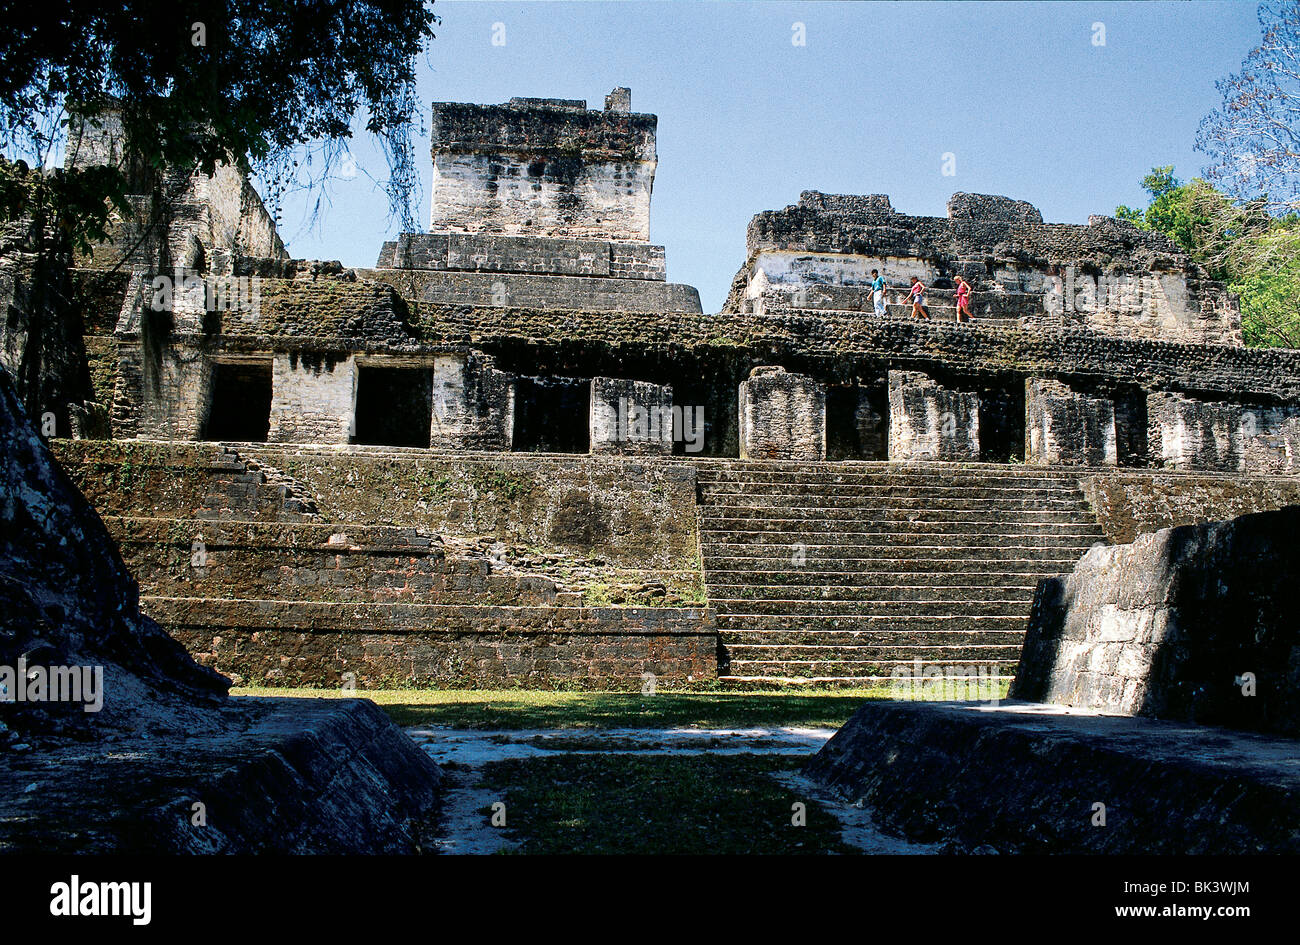 Las ruinas Mayas en Tikal Guatemala Fotografía de stock Alamy